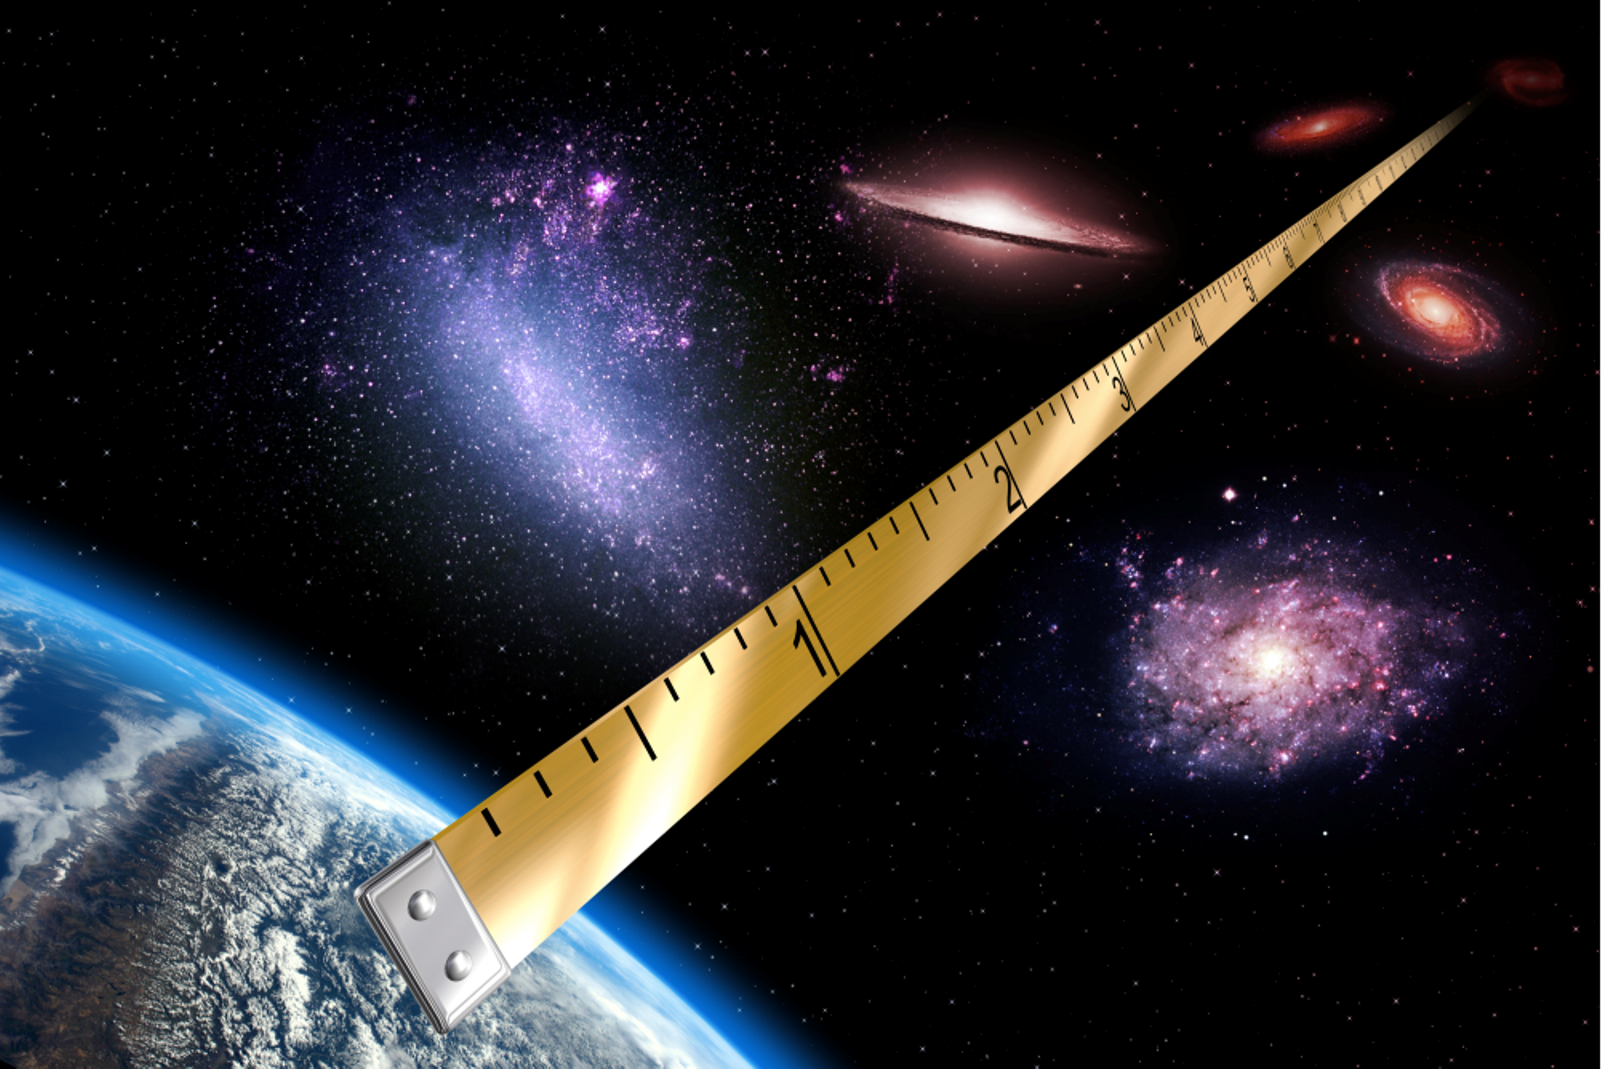 Vue d’artiste. Pour la première fois, l’équipe du projet Araucaria a déterminé la distance du Grand Nuage de Magellan avec une précision de 1 %. Cette précision est comparable, par exemple, à celle que l’on peut atteindre en mesurant la taille d'une personne à une longueur de cheveu près, à la « simple » différence que, dans le cas du GNM, la distance mesurée correspond à 162.000 années-lumière, soit 1,53 milliard de milliards de kilomètres. © CNRS, Insu